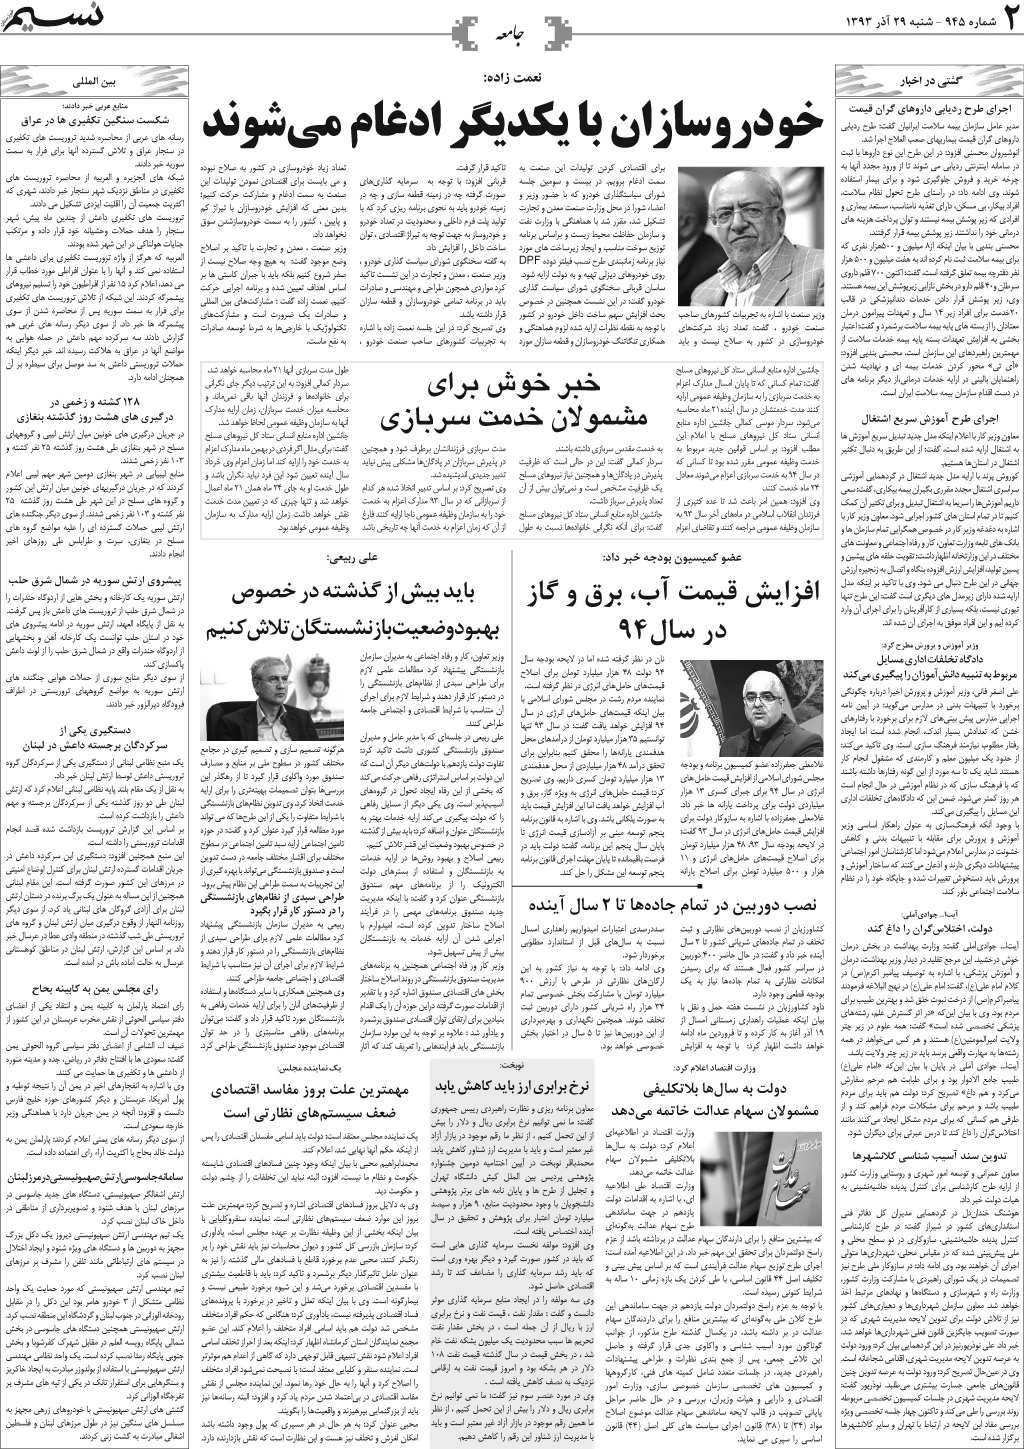 صفحه جامعه روزنامه نسیم شماره 945